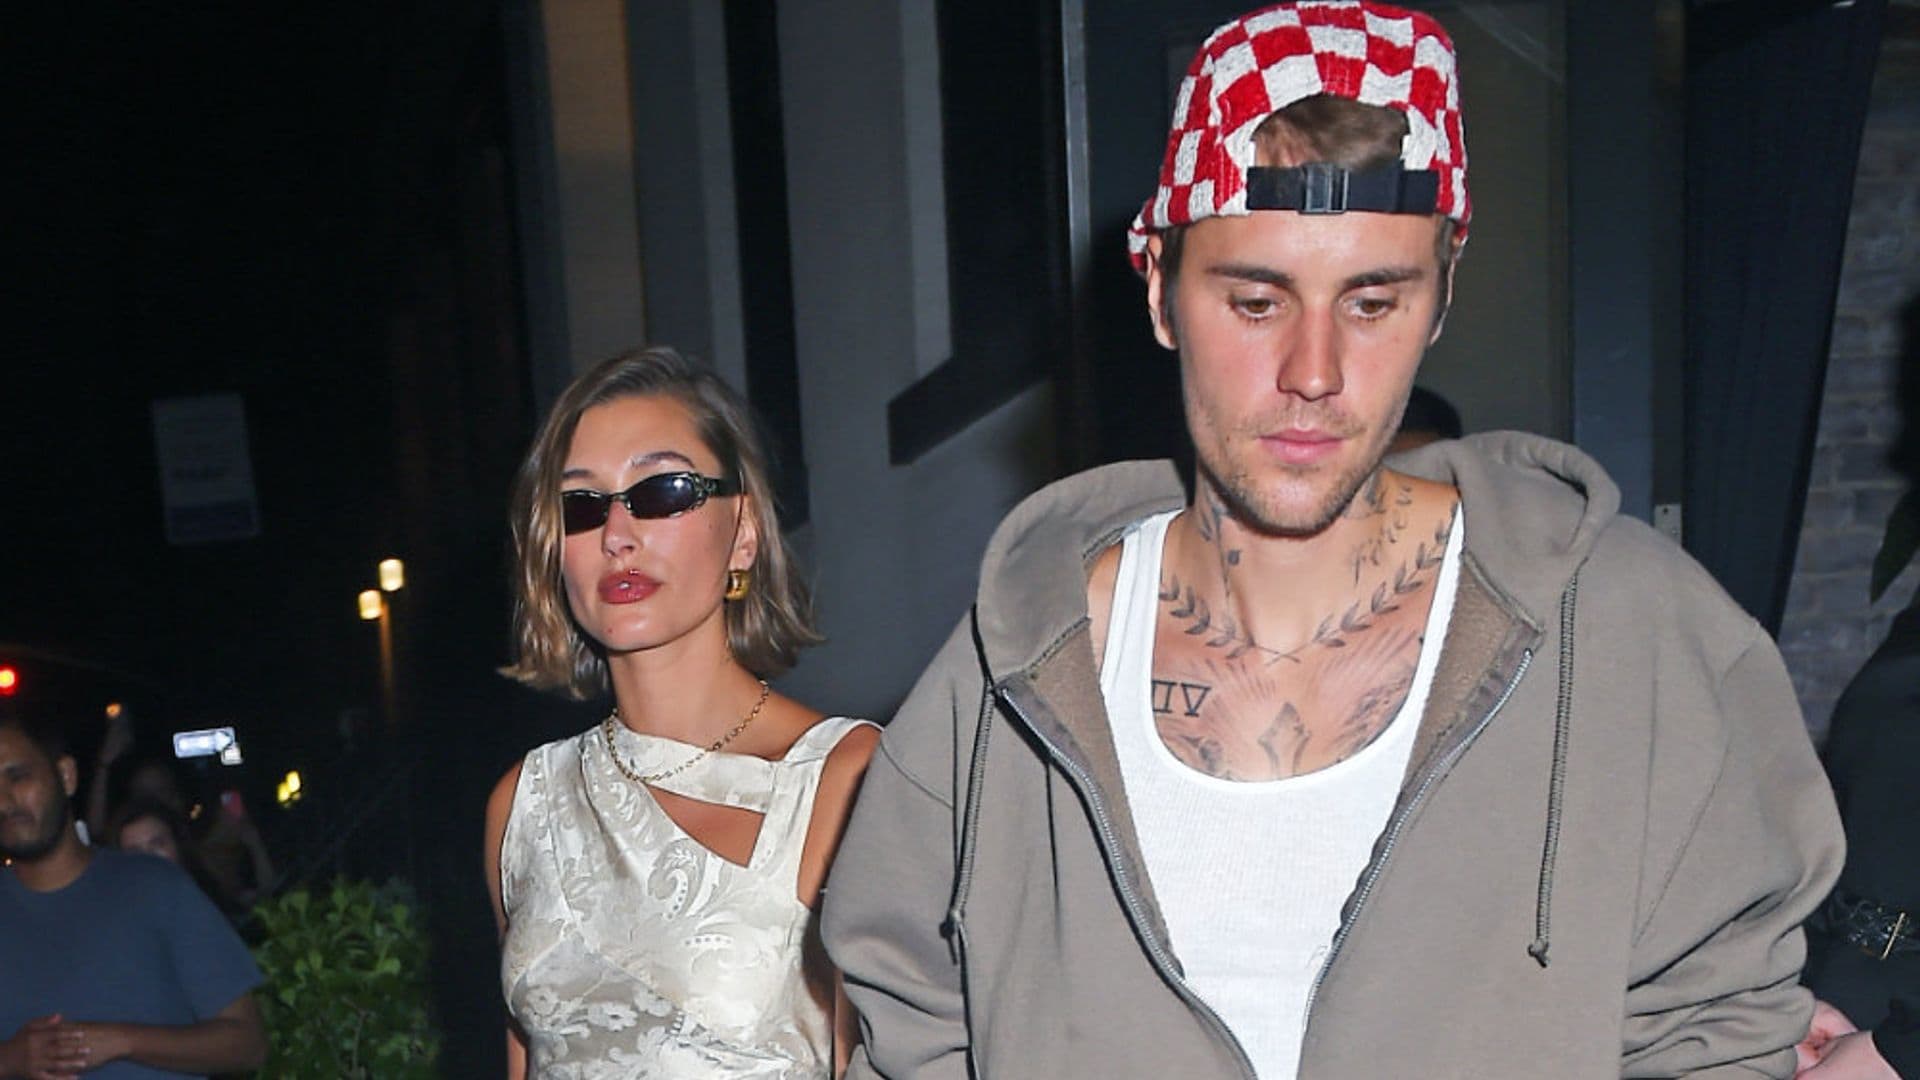 Hailey y Justin Bieber impactan con sus looks opuestos para una cena romántica